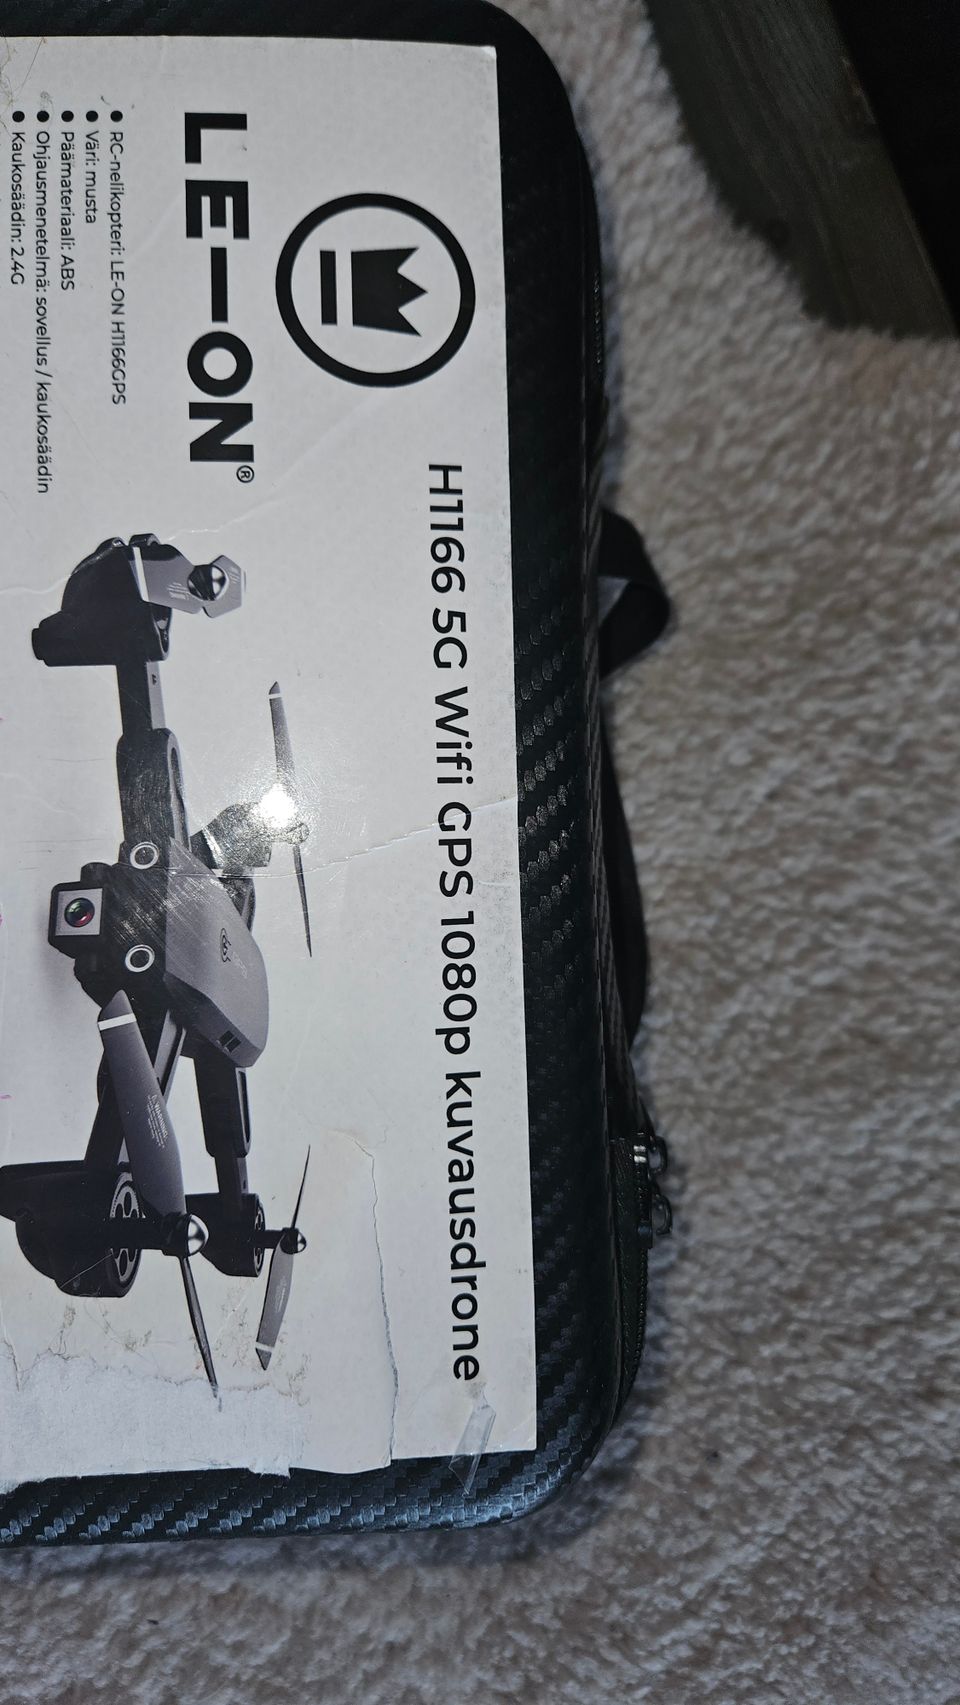 Kuvausdrone H1166 5g Wifi 1080p